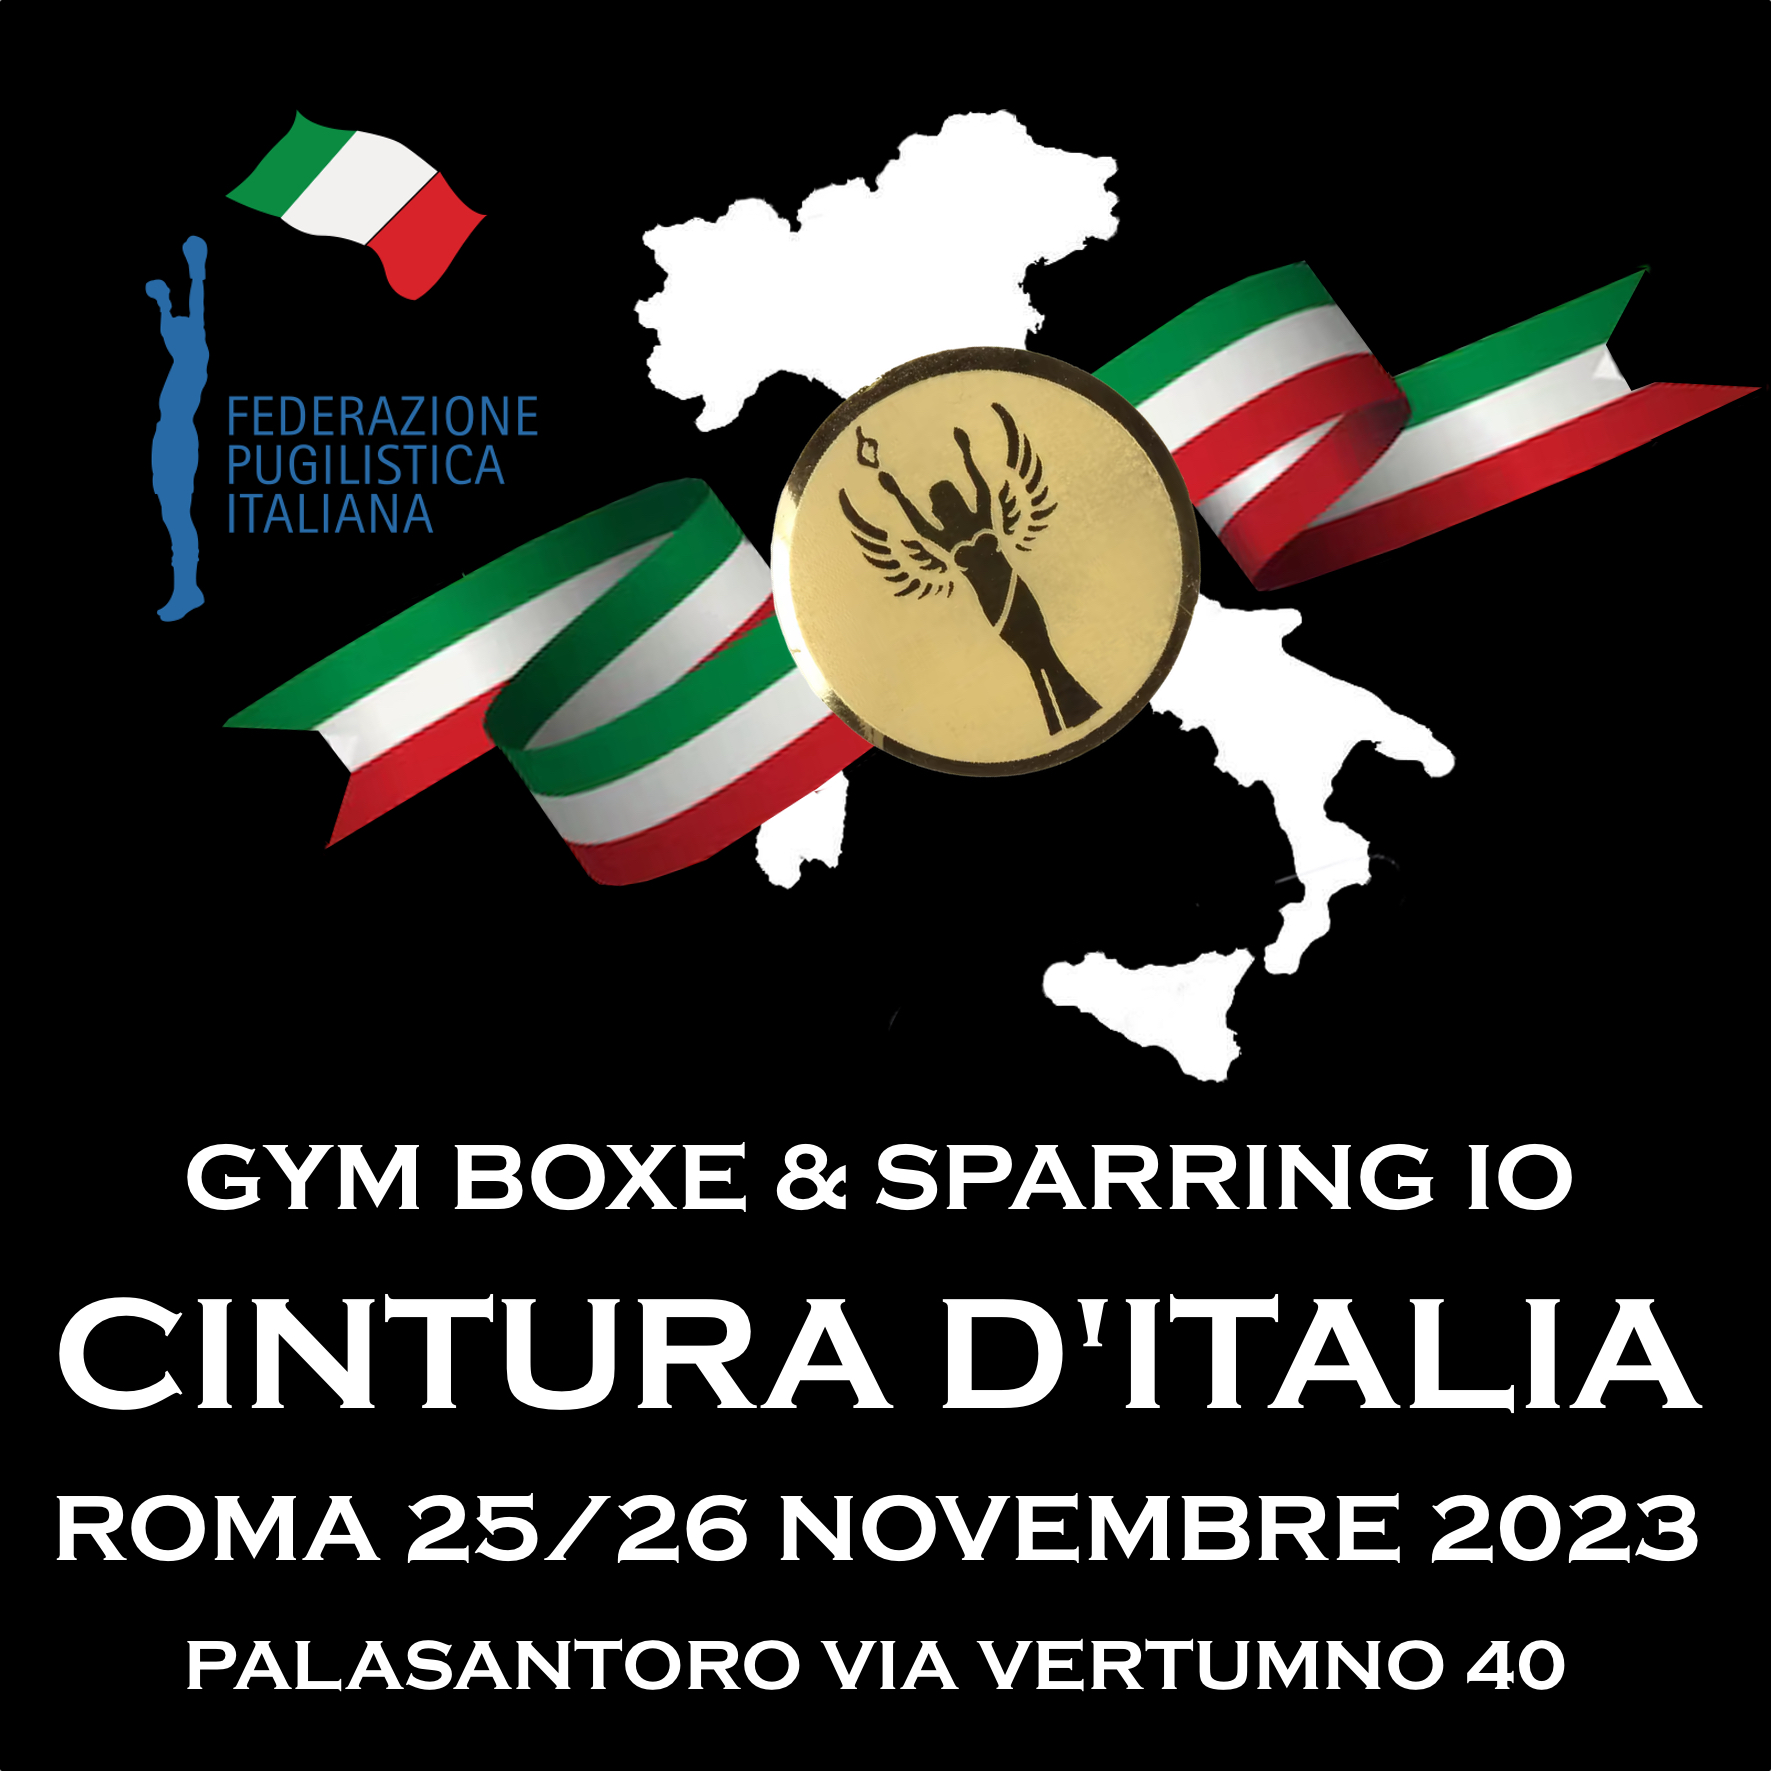 Cintura Italia Gym Boxe & Contura Italia Sparring-IO: IL 25-26 NOVEMBRE A ROMA 